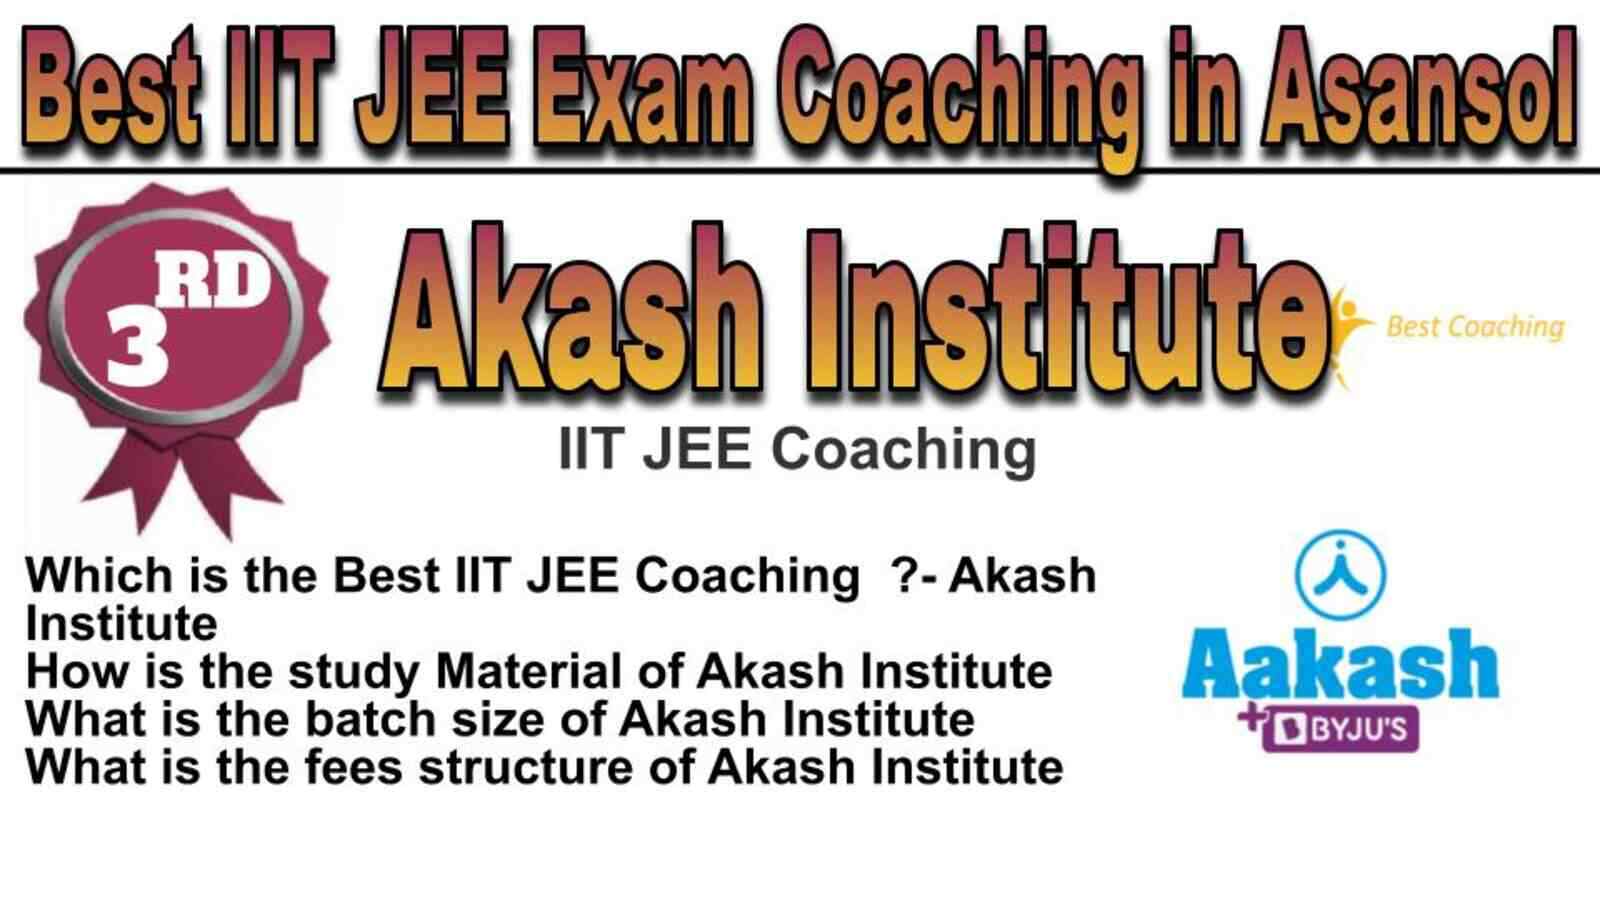 Rank 3 Best IIT JEE Coaching in Asansol